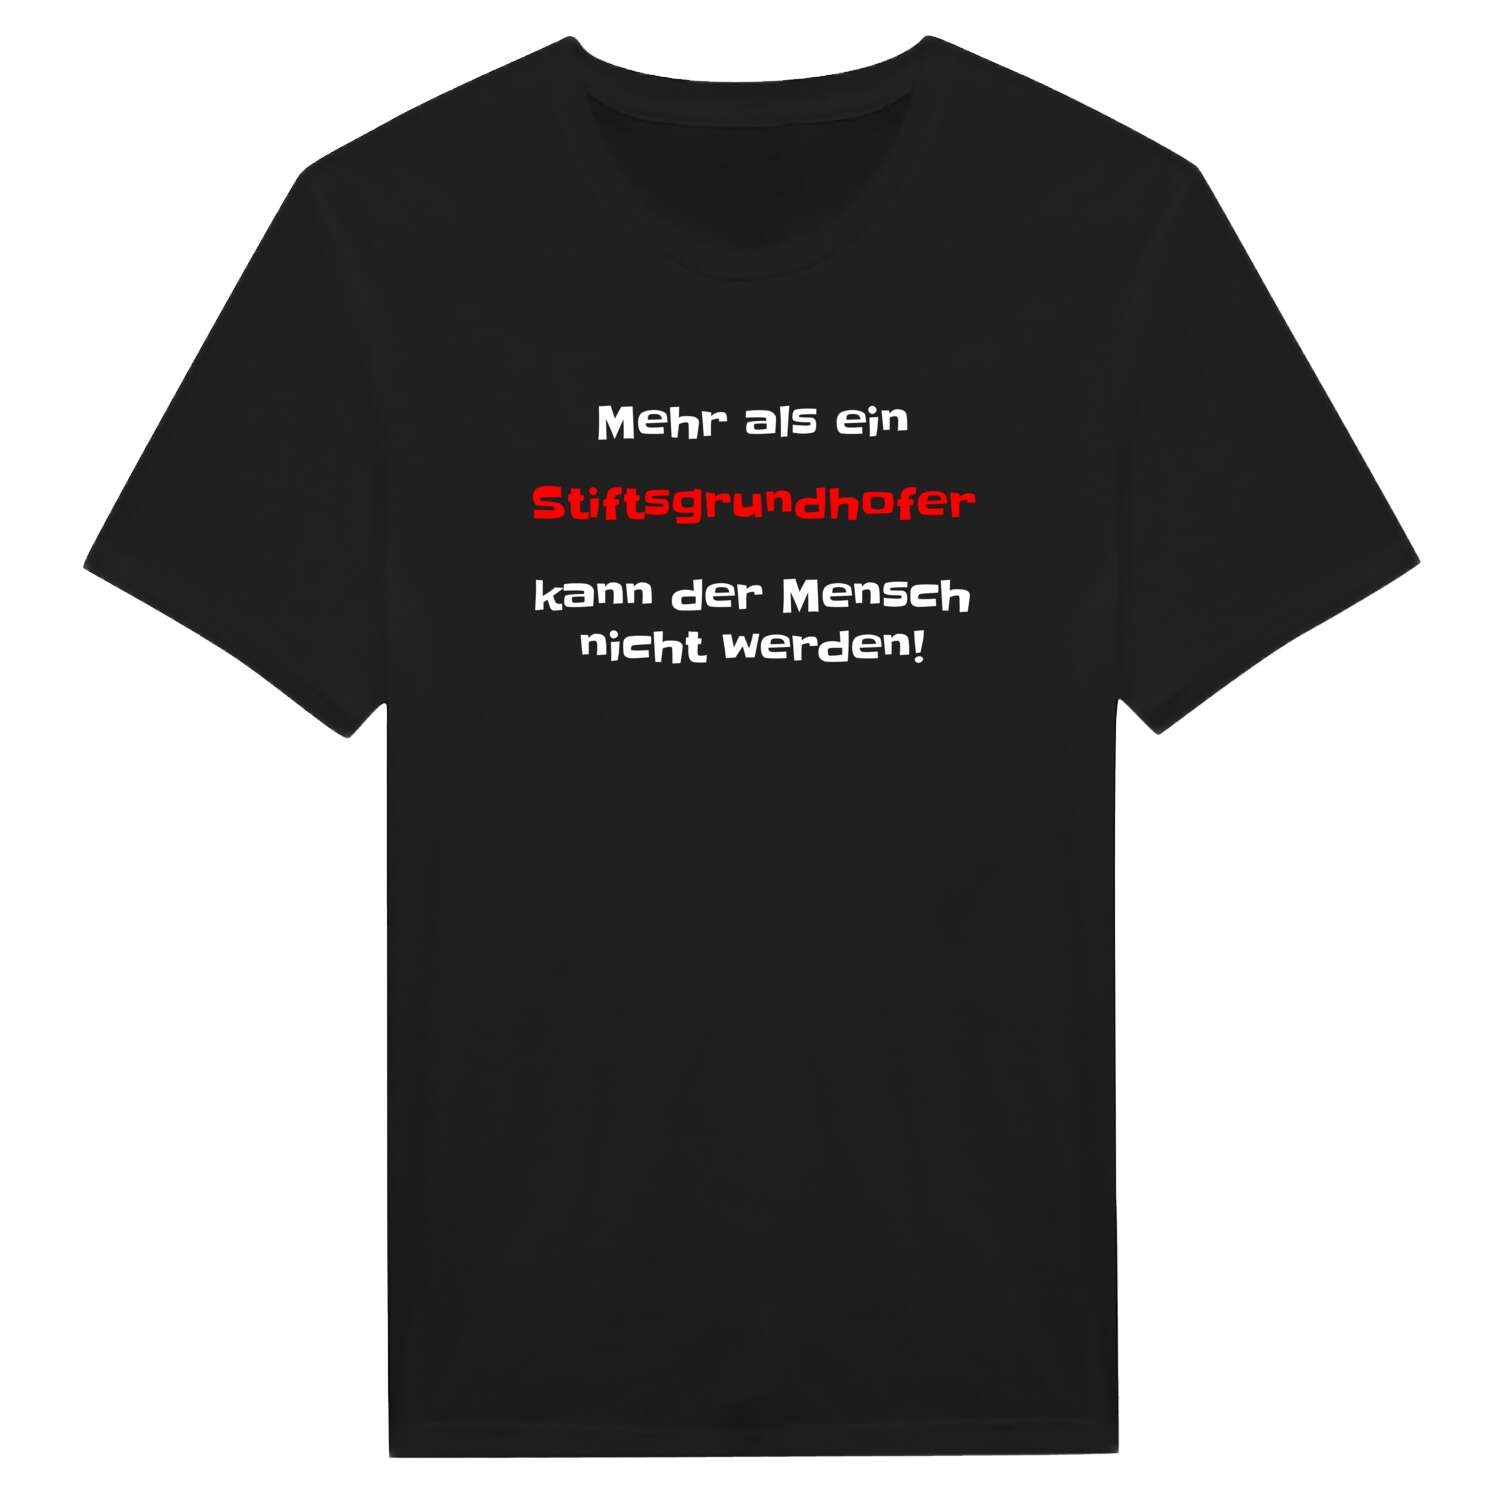 Stiftsgrundhof T-Shirt »Mehr als ein«